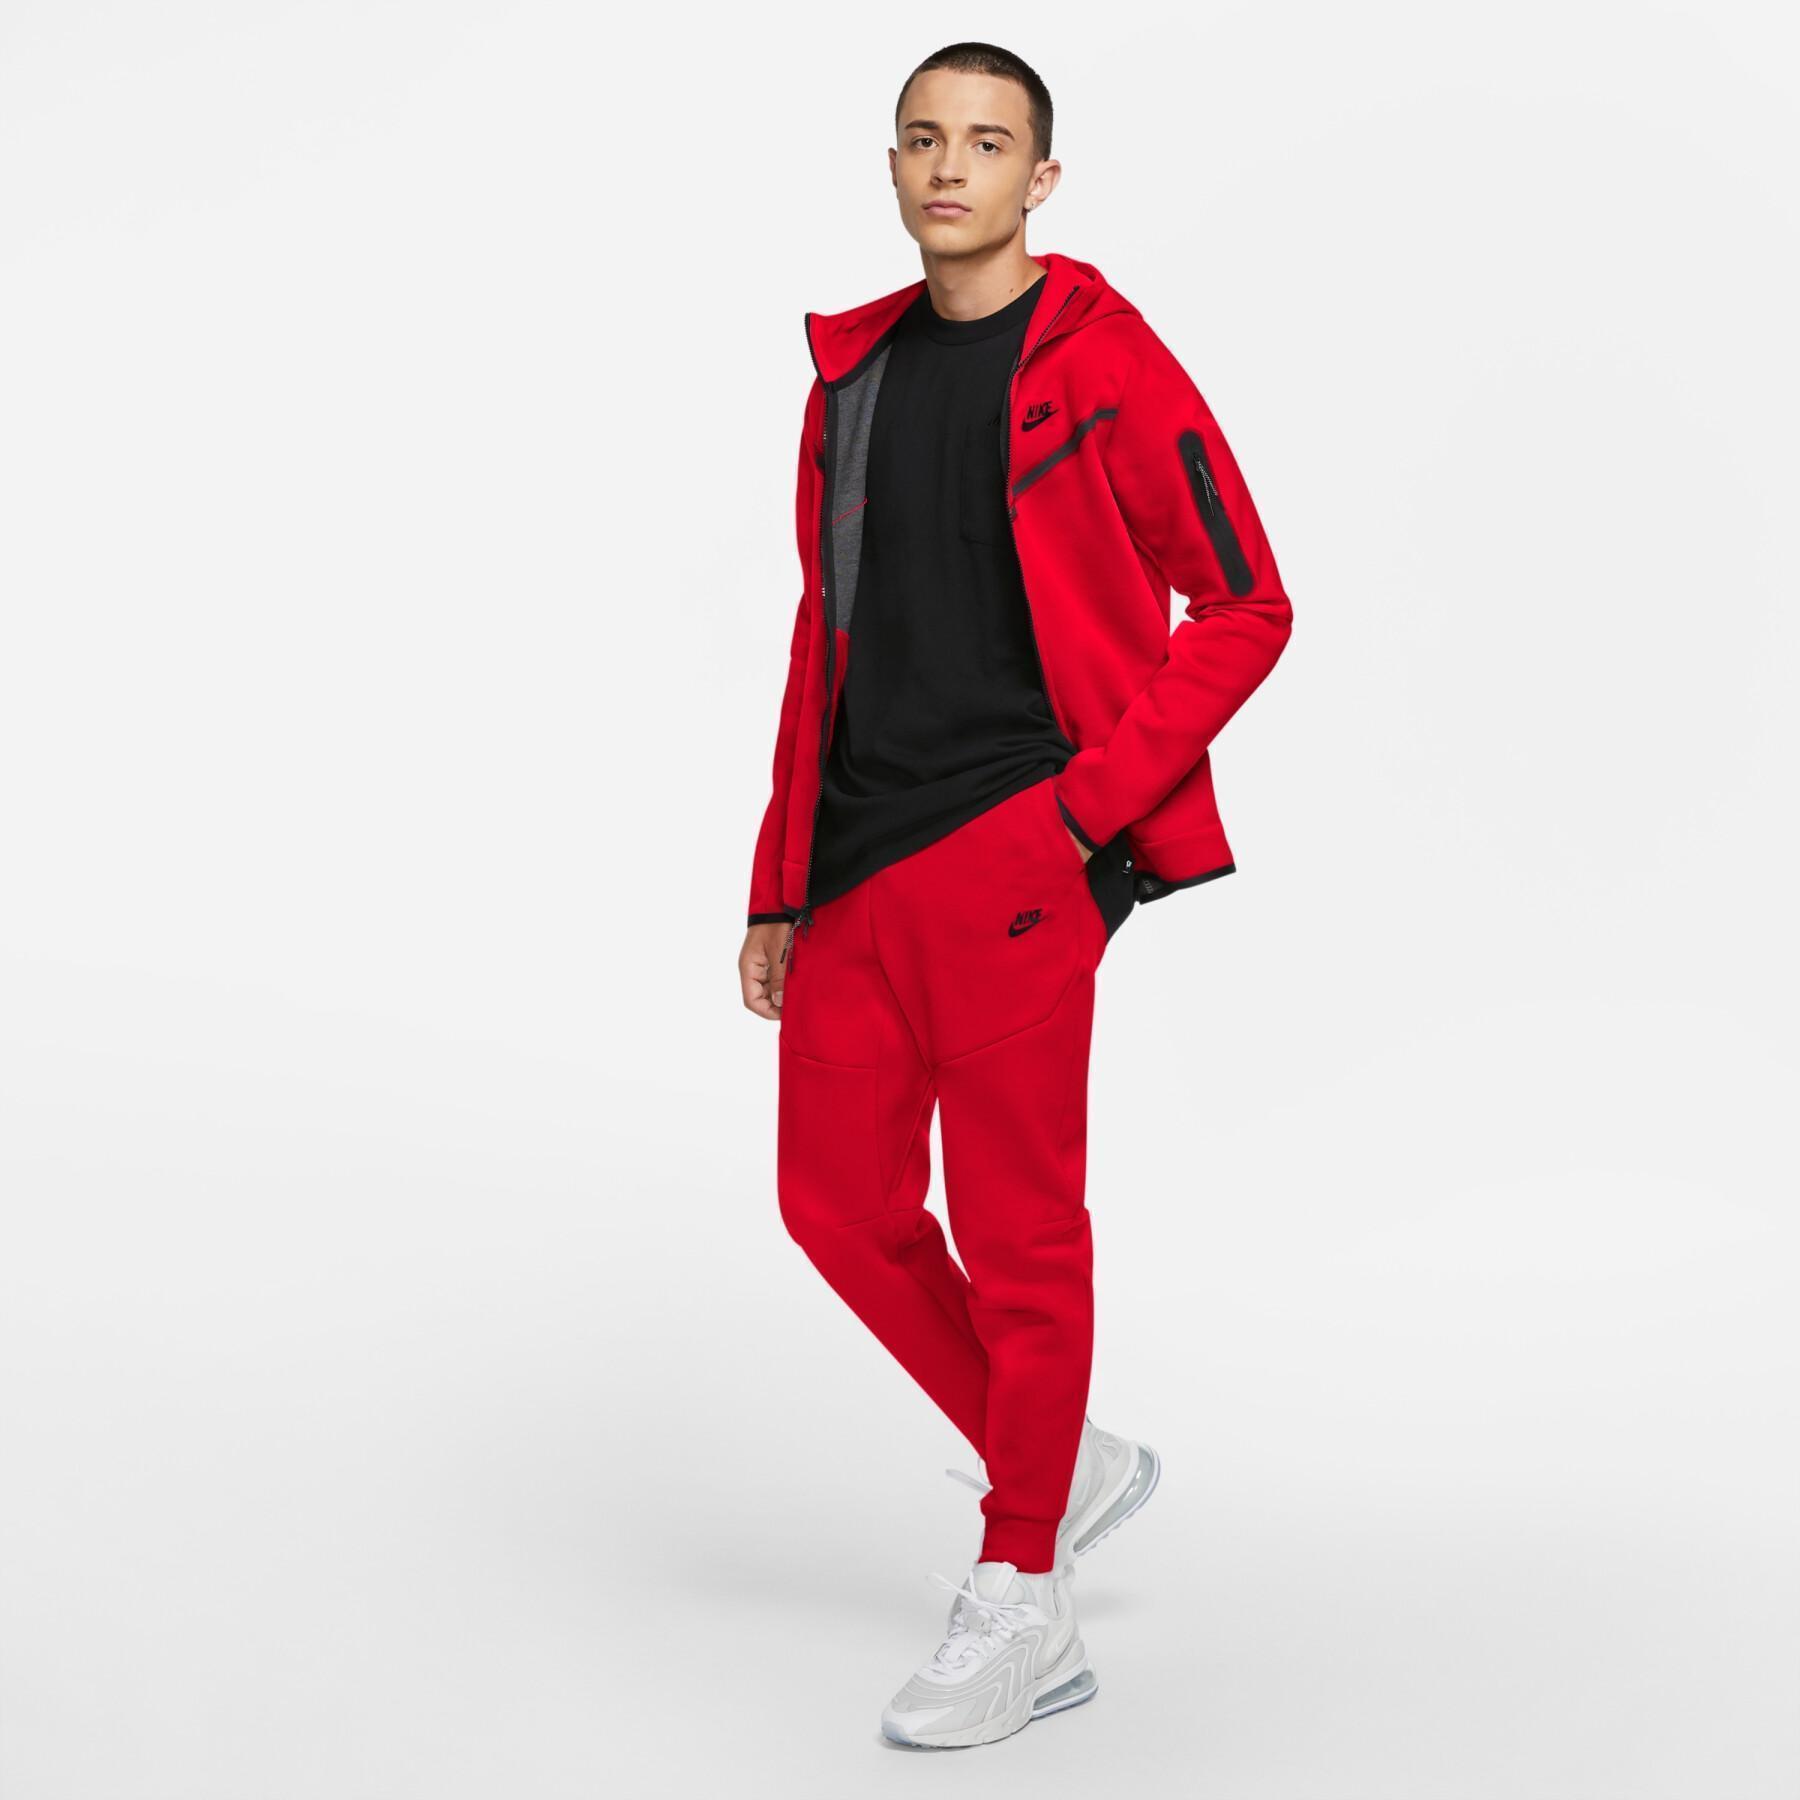 Pantalón de jogging Nike Sportswear Tech Fleece